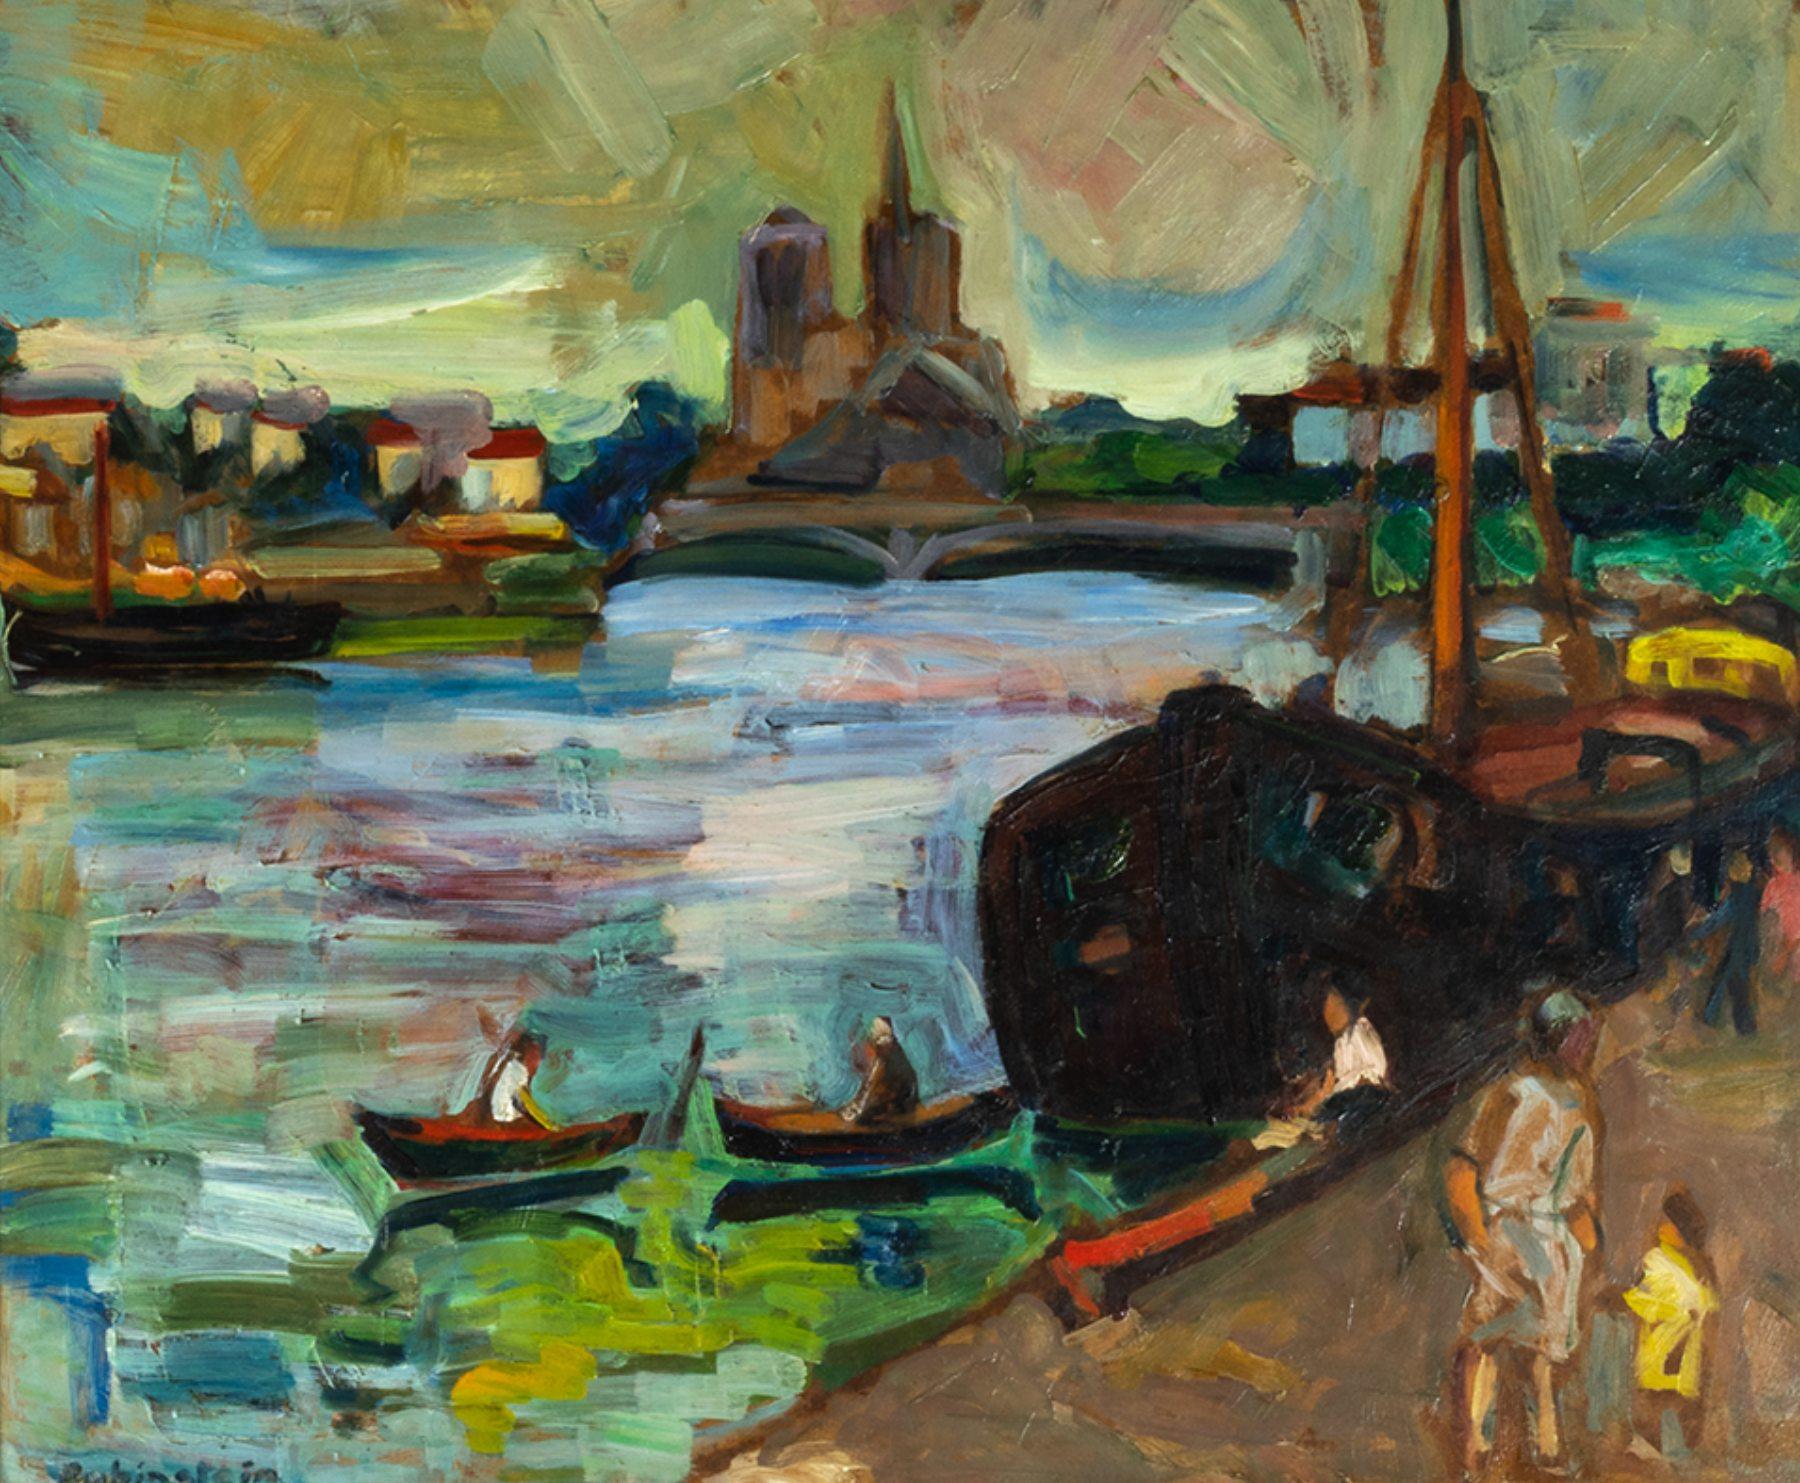 Un fond français des canaux de Paris, Les Barges titrées.
Une peinture à l'huile post-impressionniste colorée du 20e siècle d'origine yiddish.
